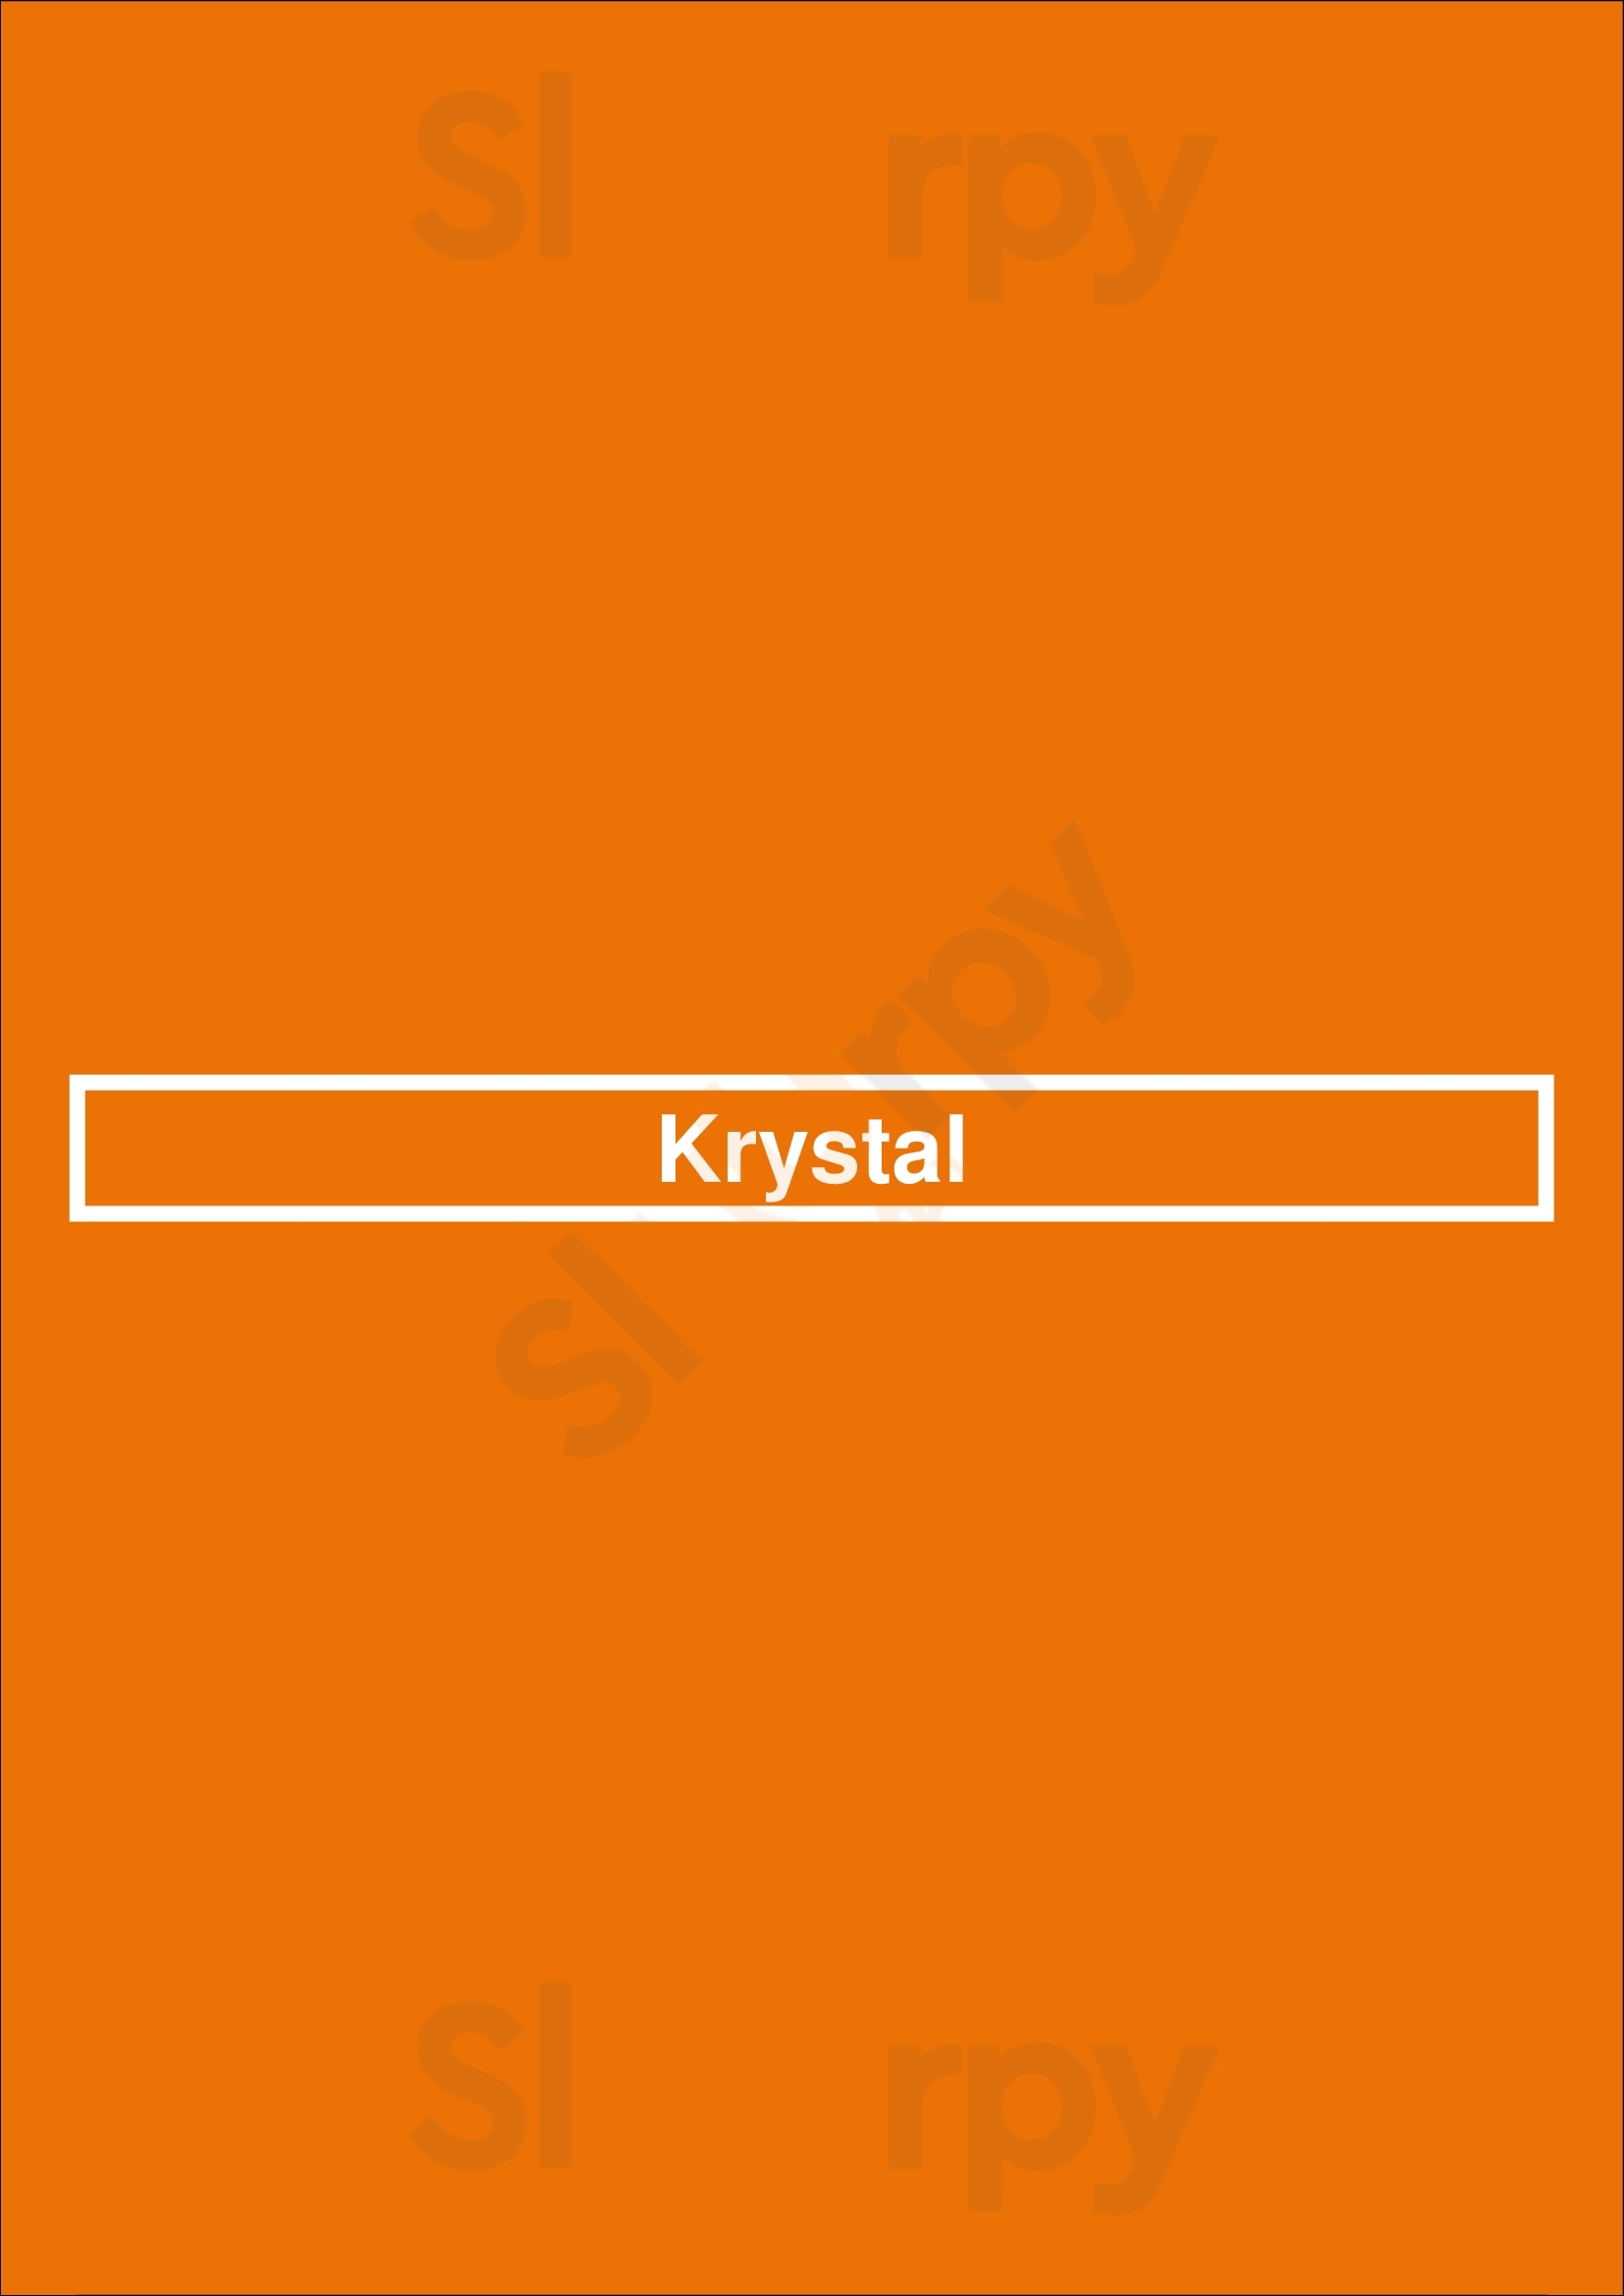 Krystal Mobile Menu - 1